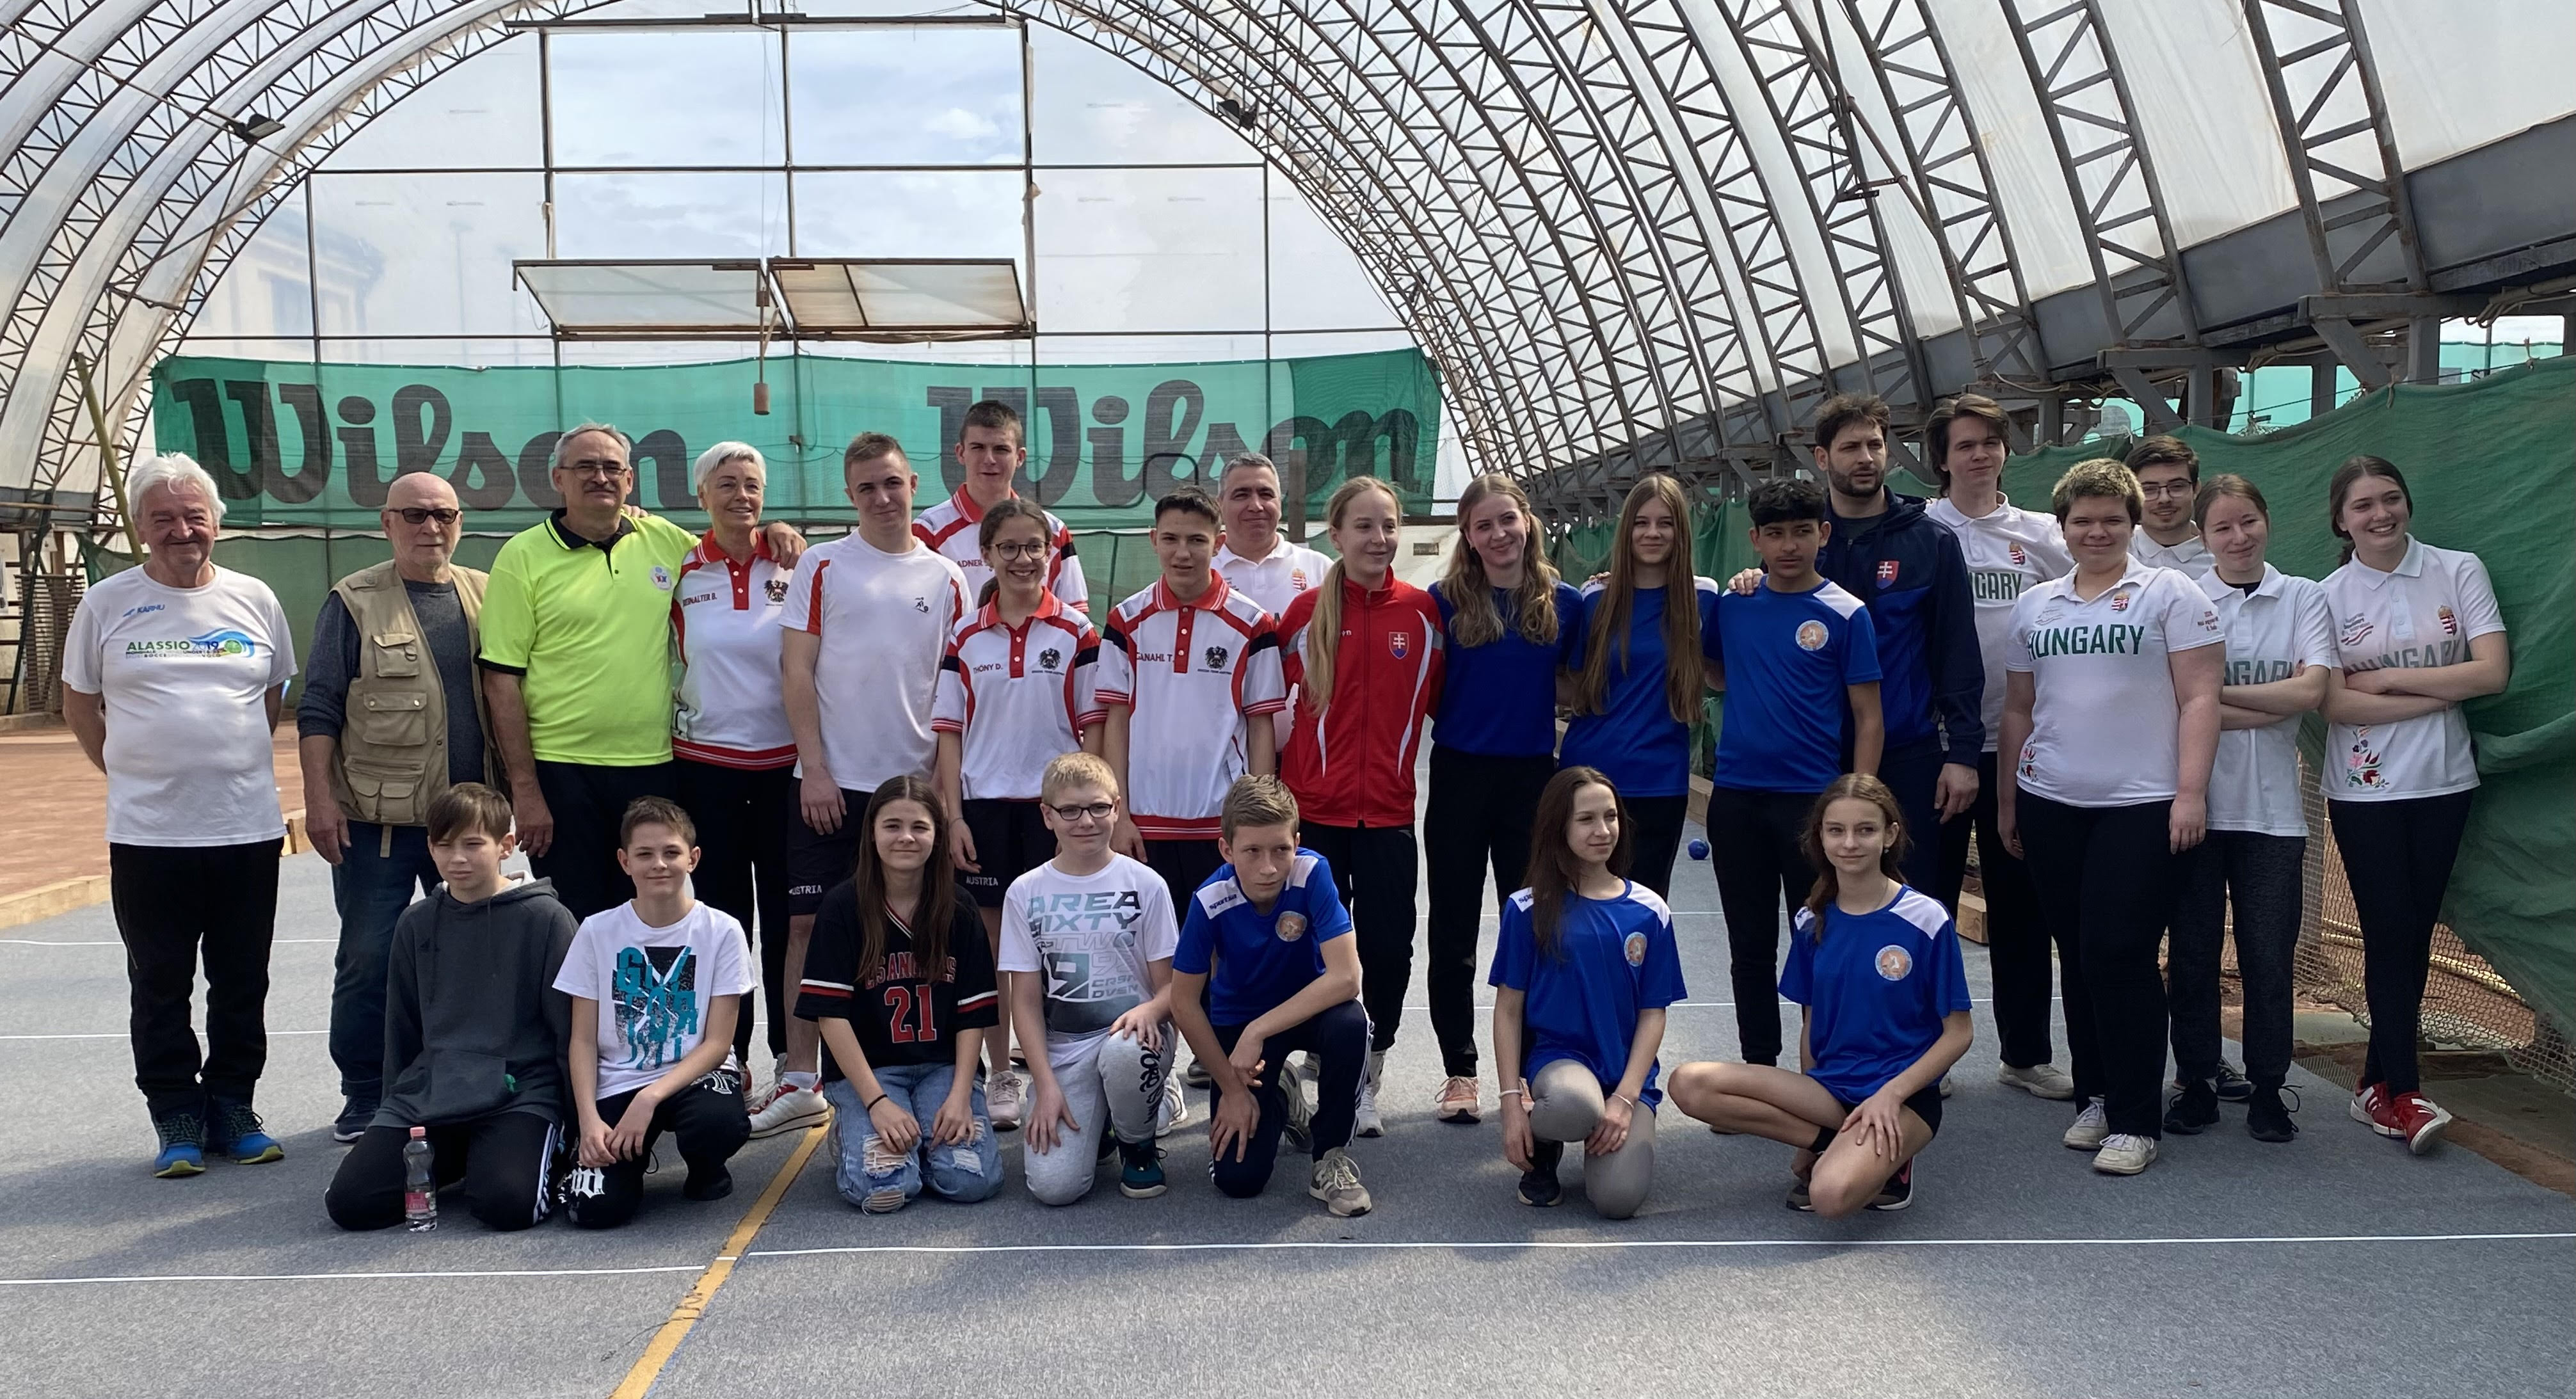 Osztrák és szlovák játékosok részvételével meghívásos utánpótlás versenyt szervezett a Magyar Golyósportok Szövetsége raffa szakágban